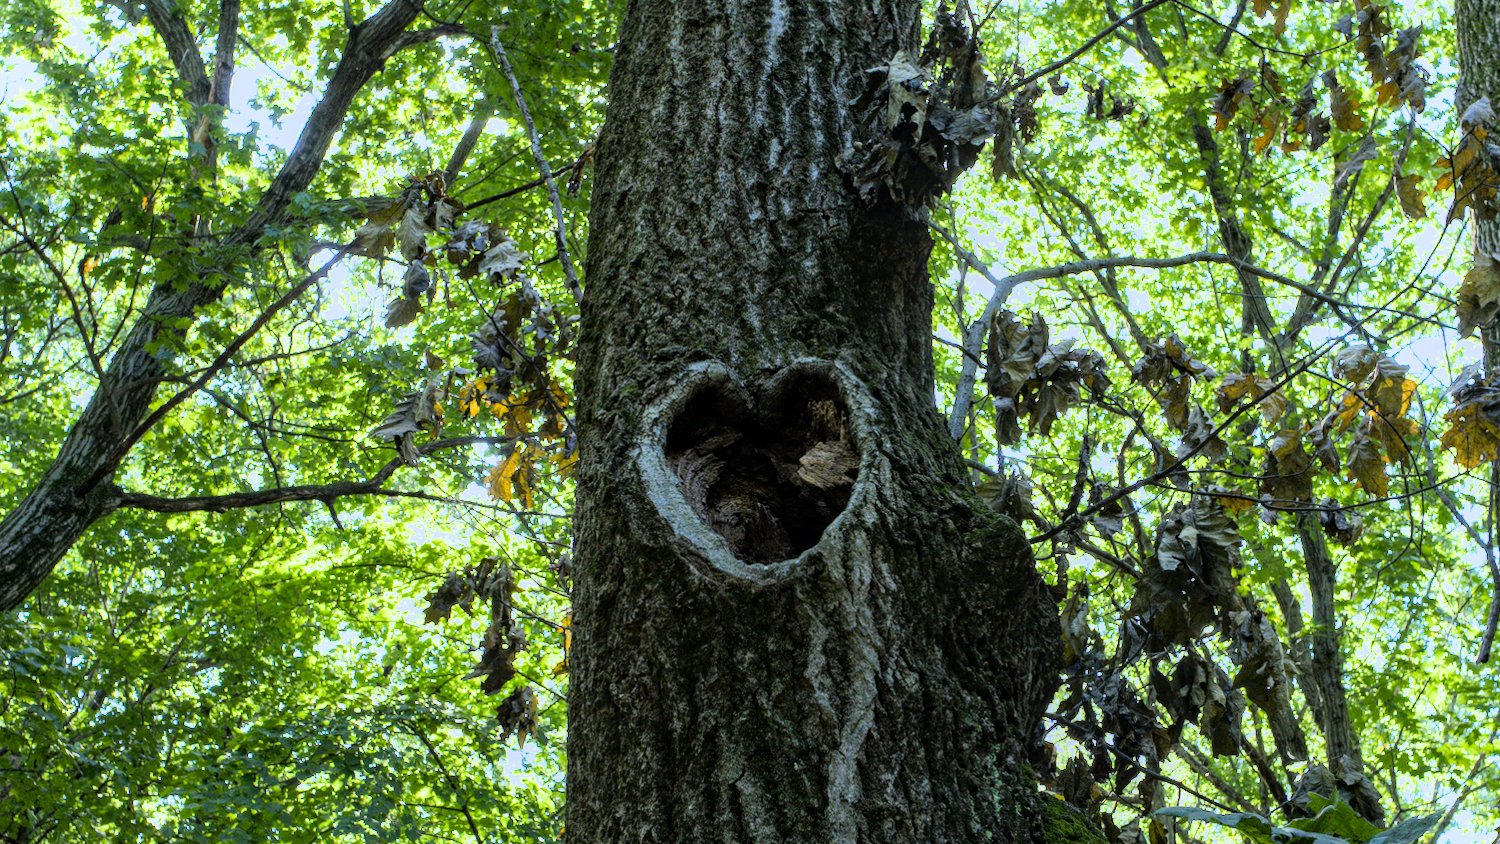 Heart shape in a tree.